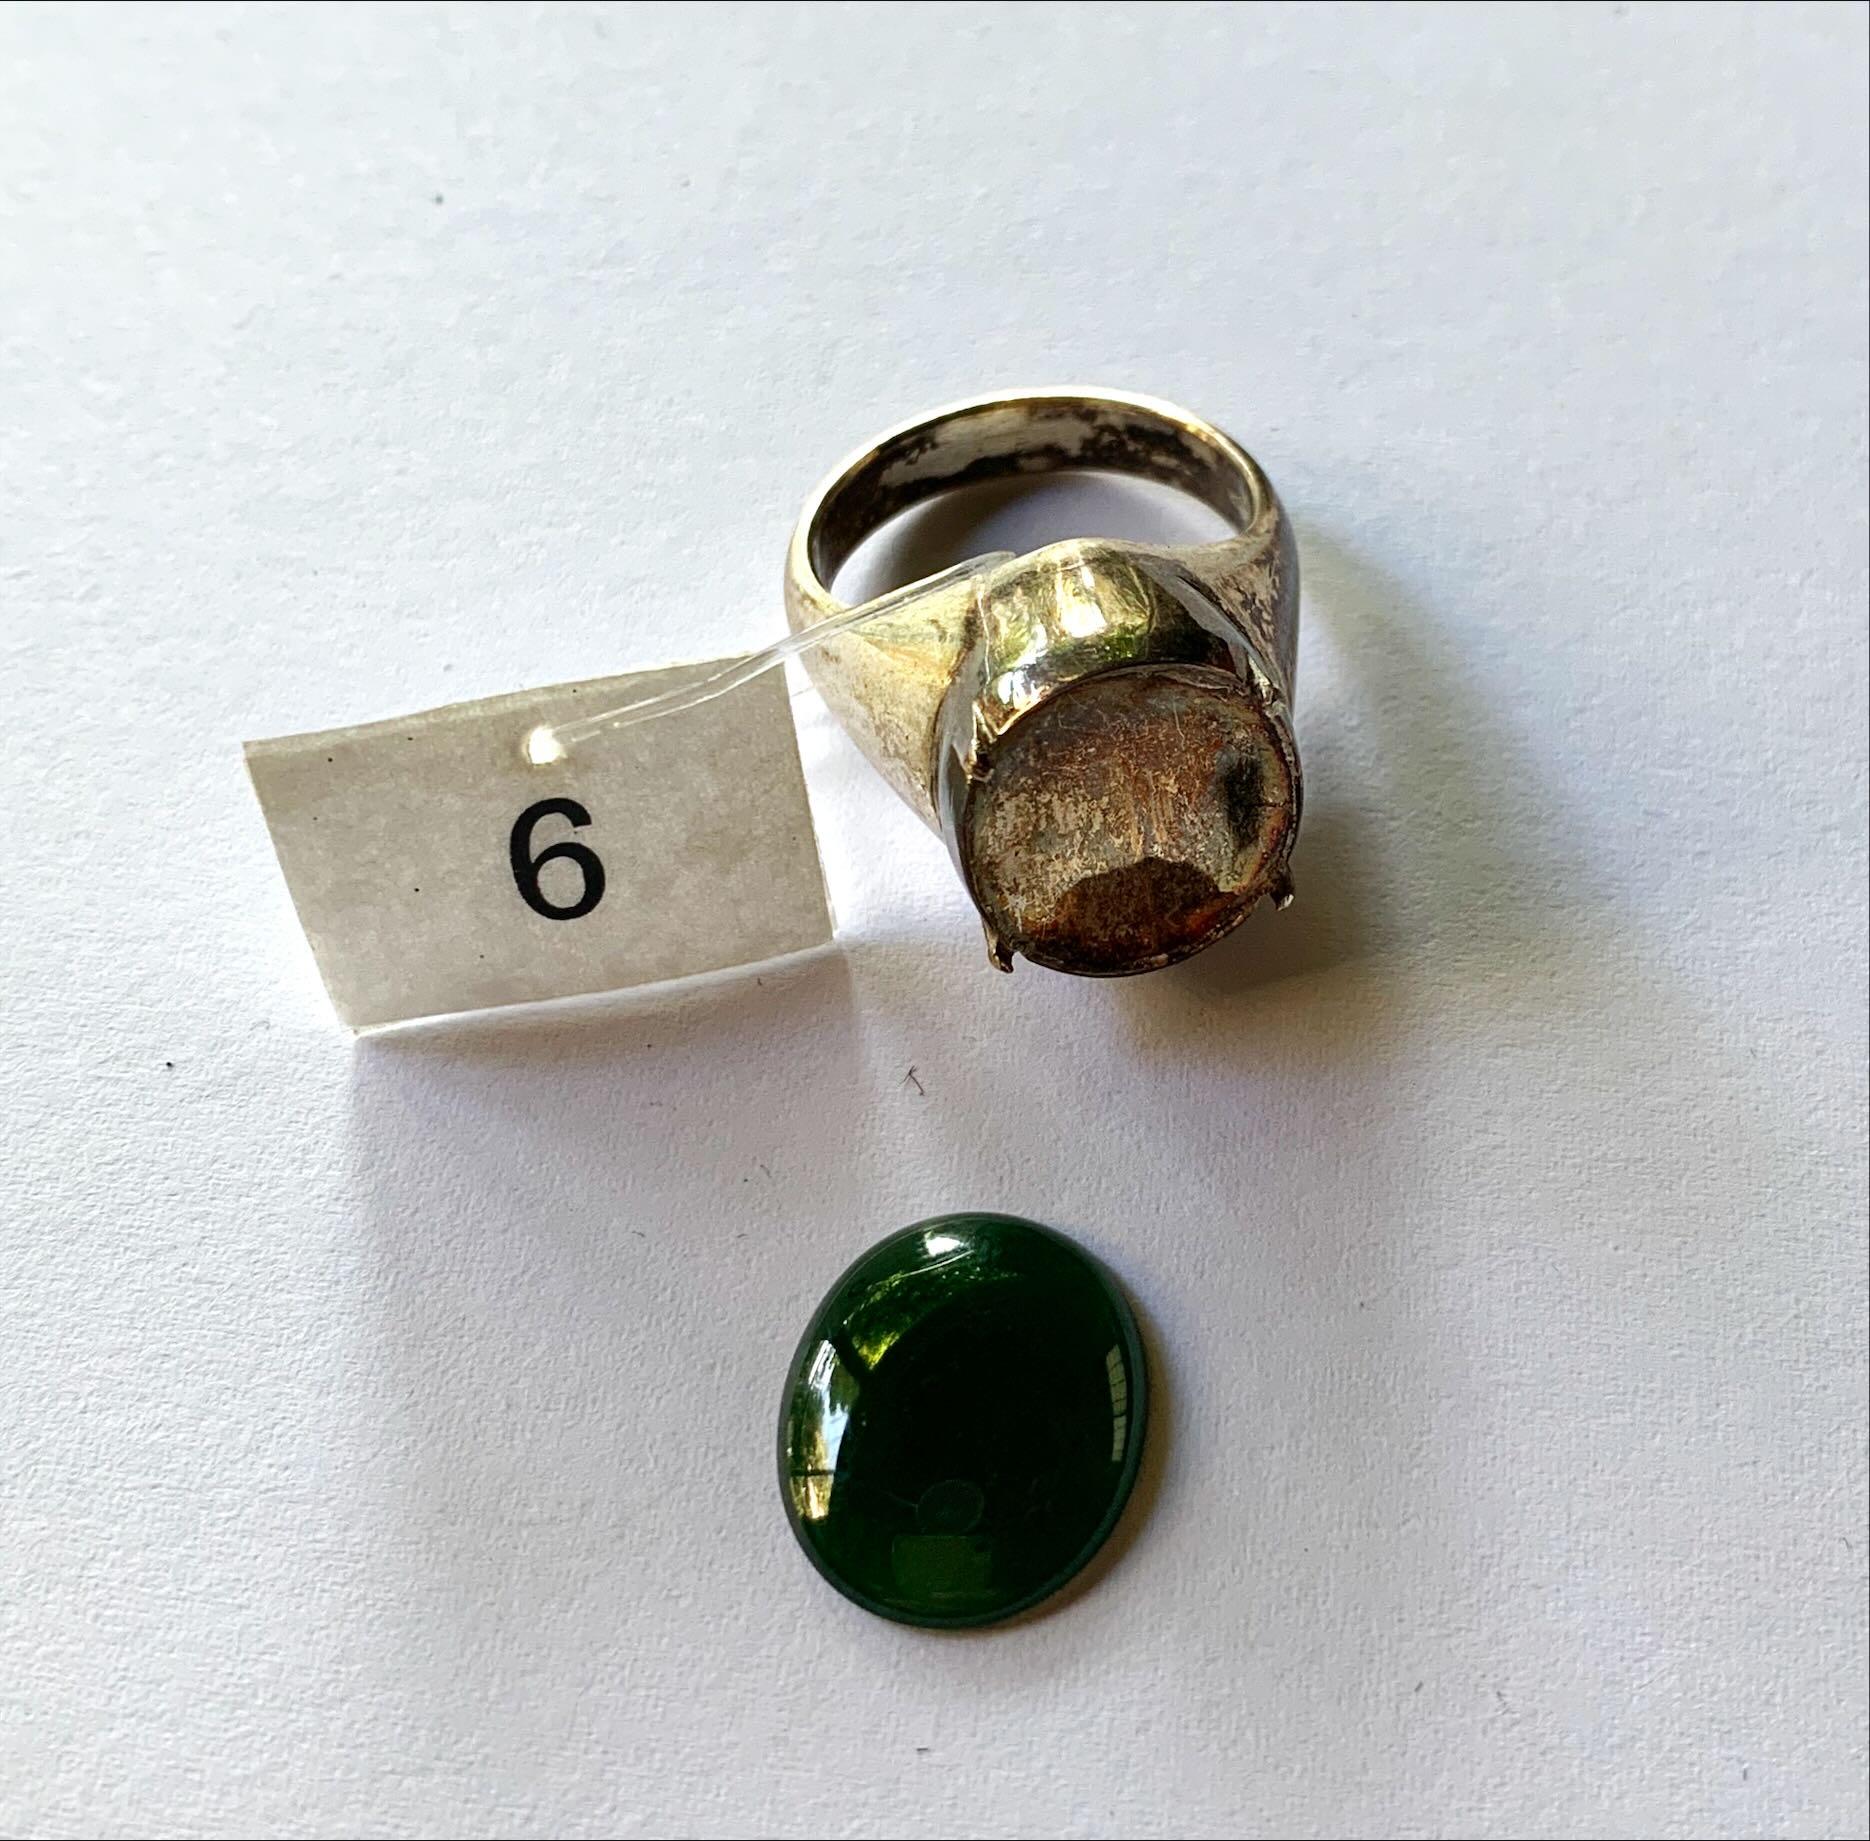 Green Rokan Myanmar Jadeite Loose Stones 5.6 ct Type A #6 For Sale 1